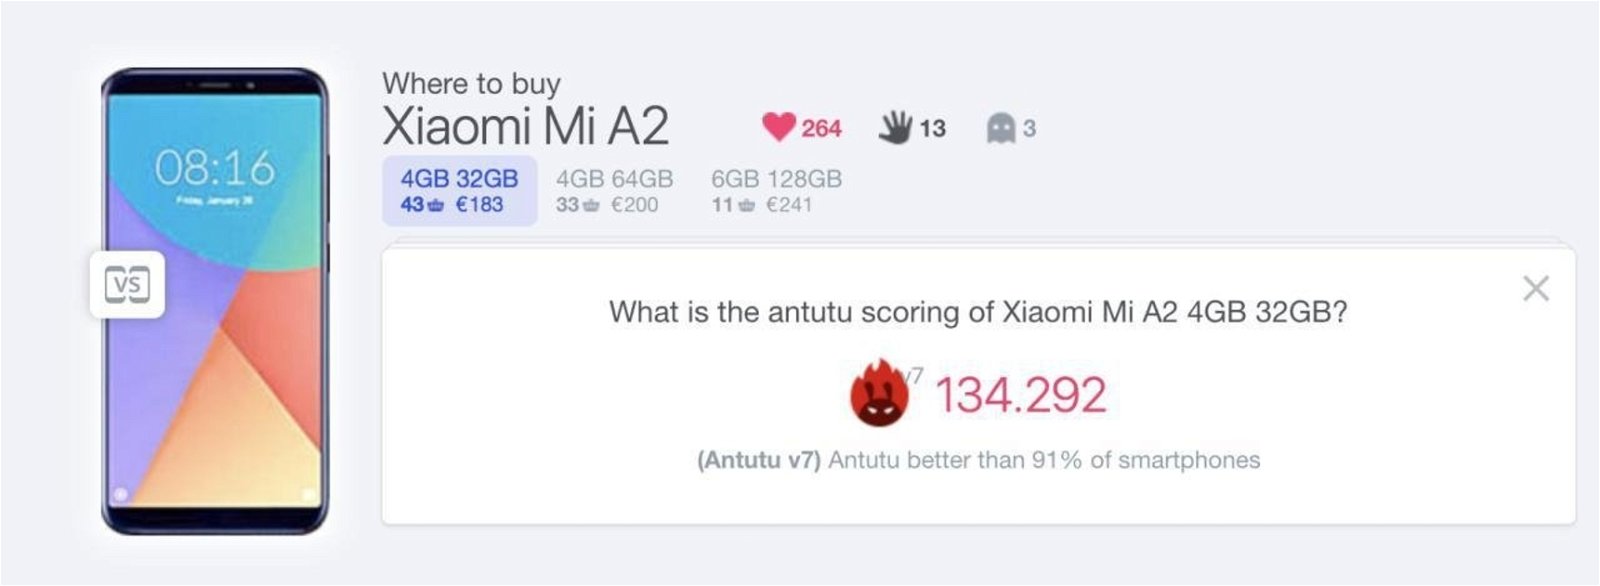 8 motivos por los que comprar el Xiaomi Redmi Note 5 antes que el Mi A2